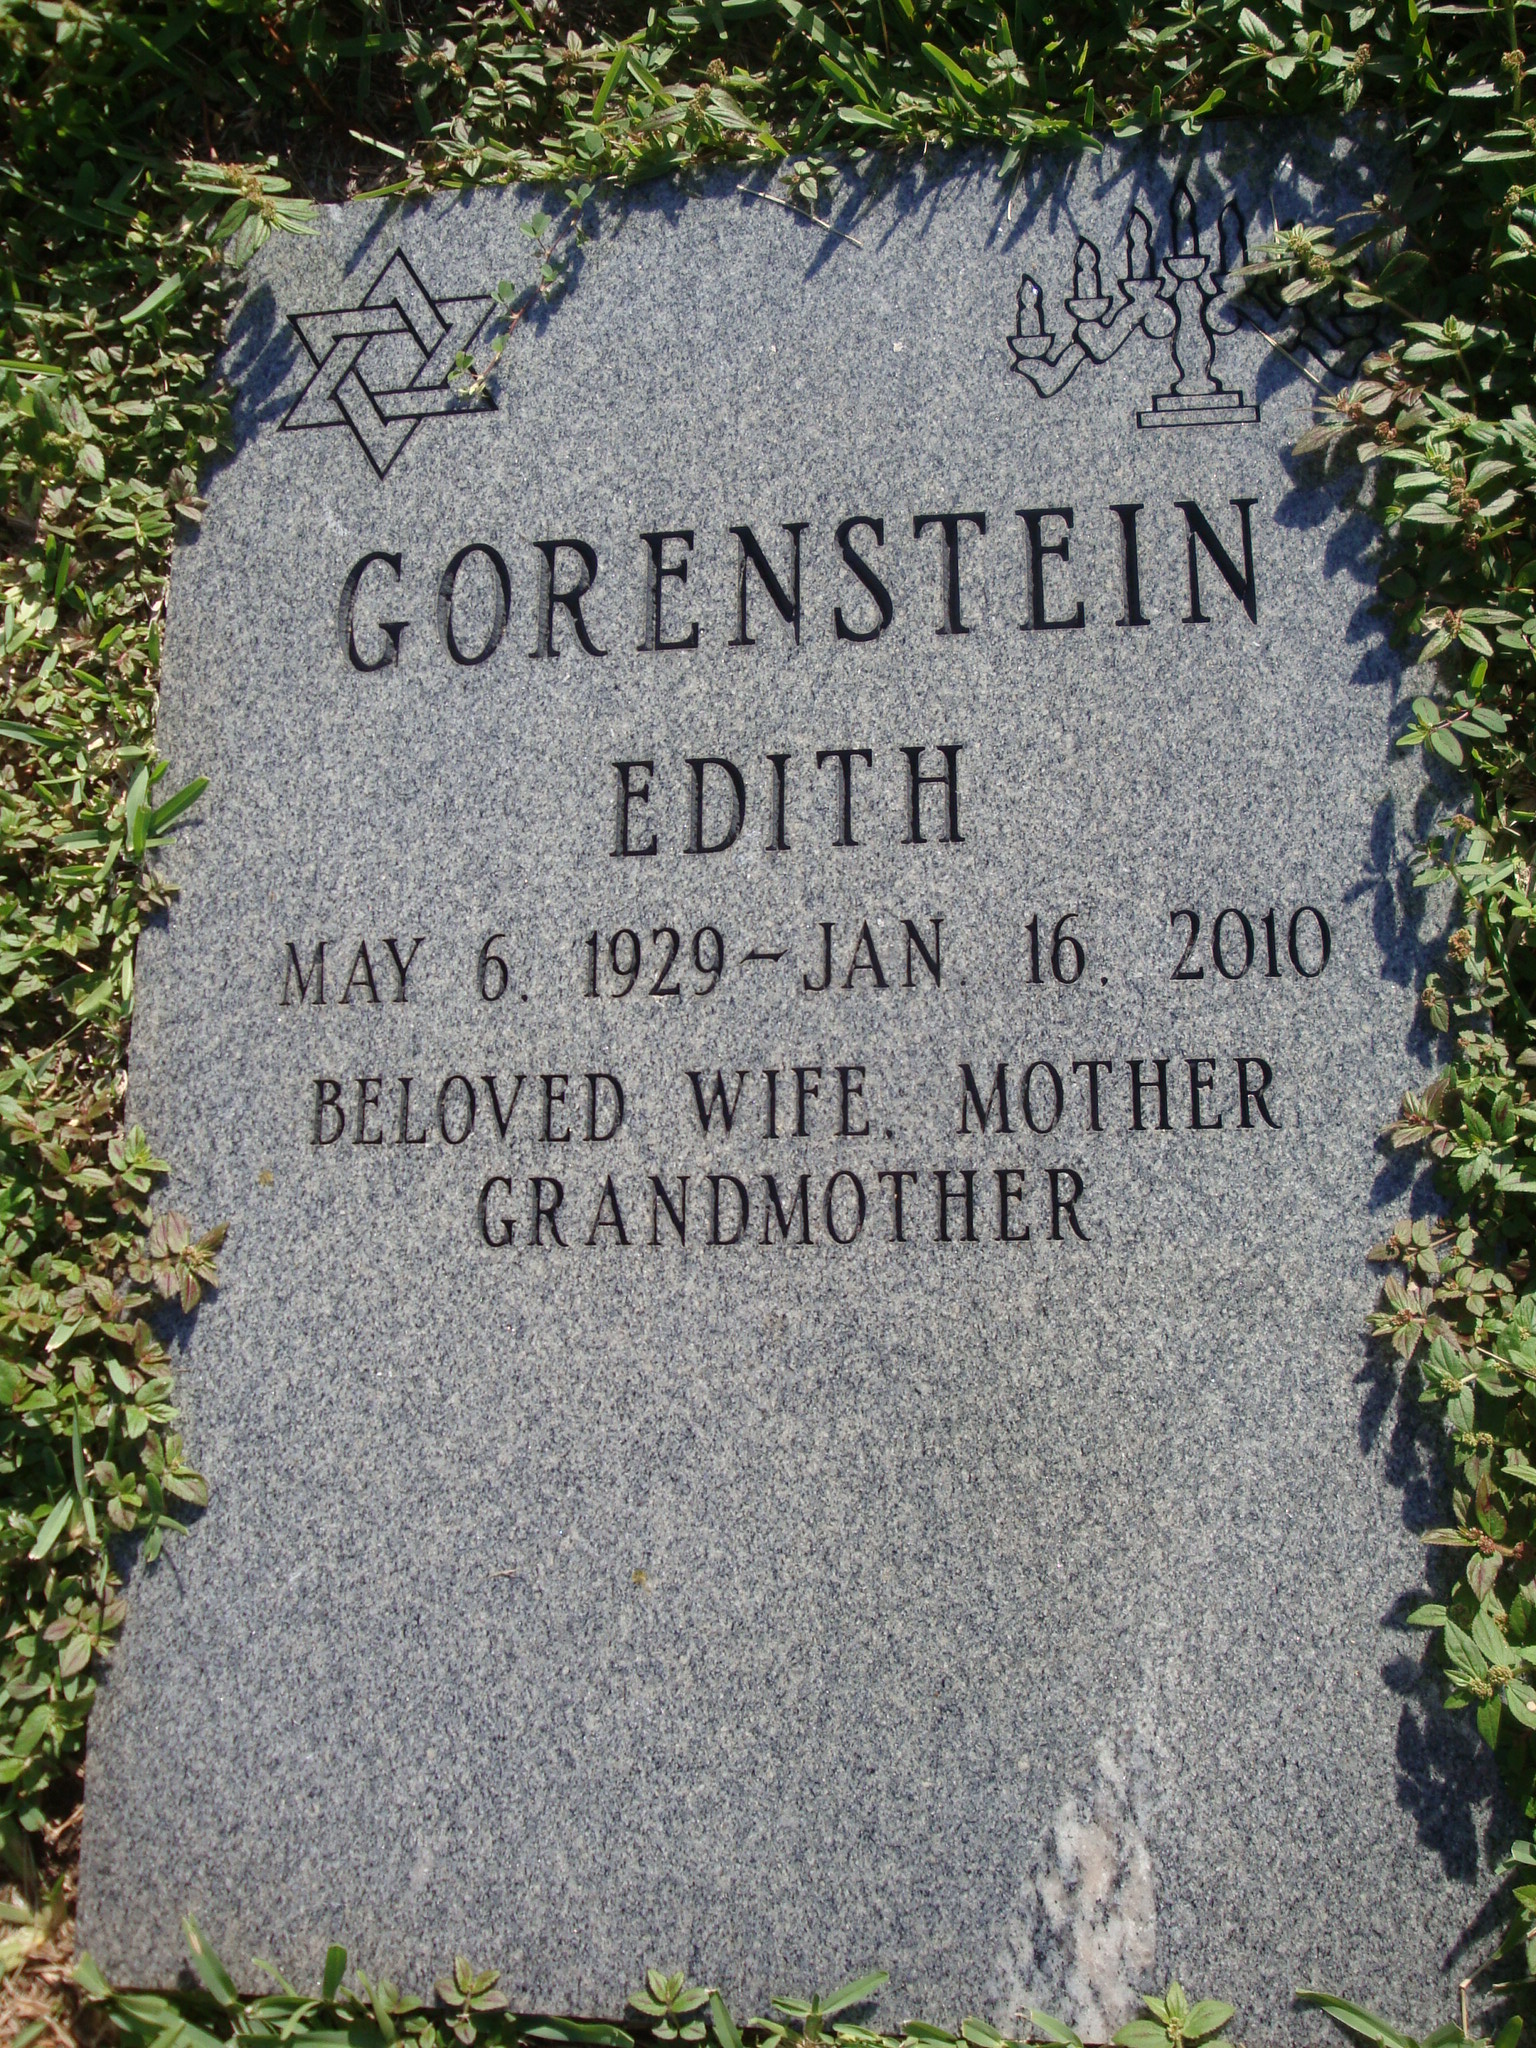 Edith Gorenstein